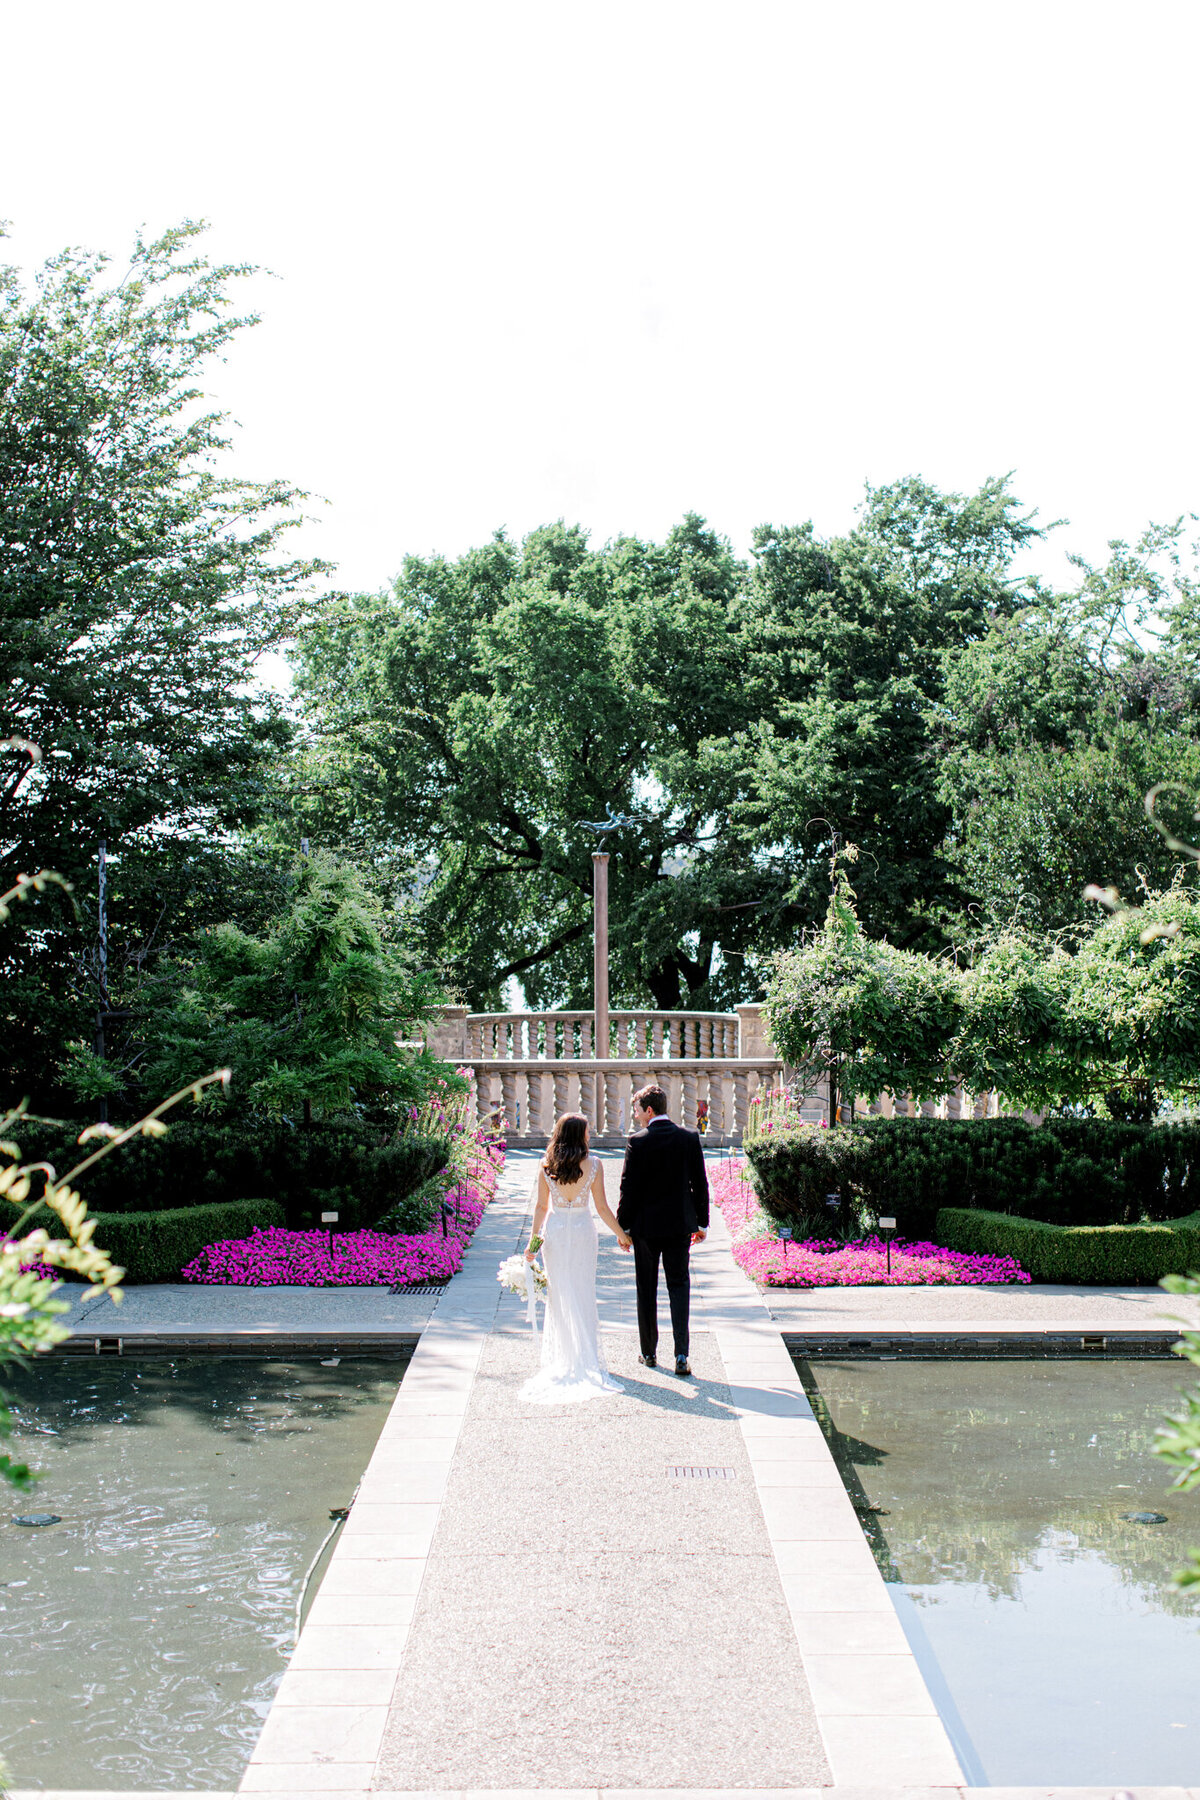 Gena & Matt's Wedding at the Dallas Arboretum | Dallas Wedding Photographer | Sami Kathryn Photography-93